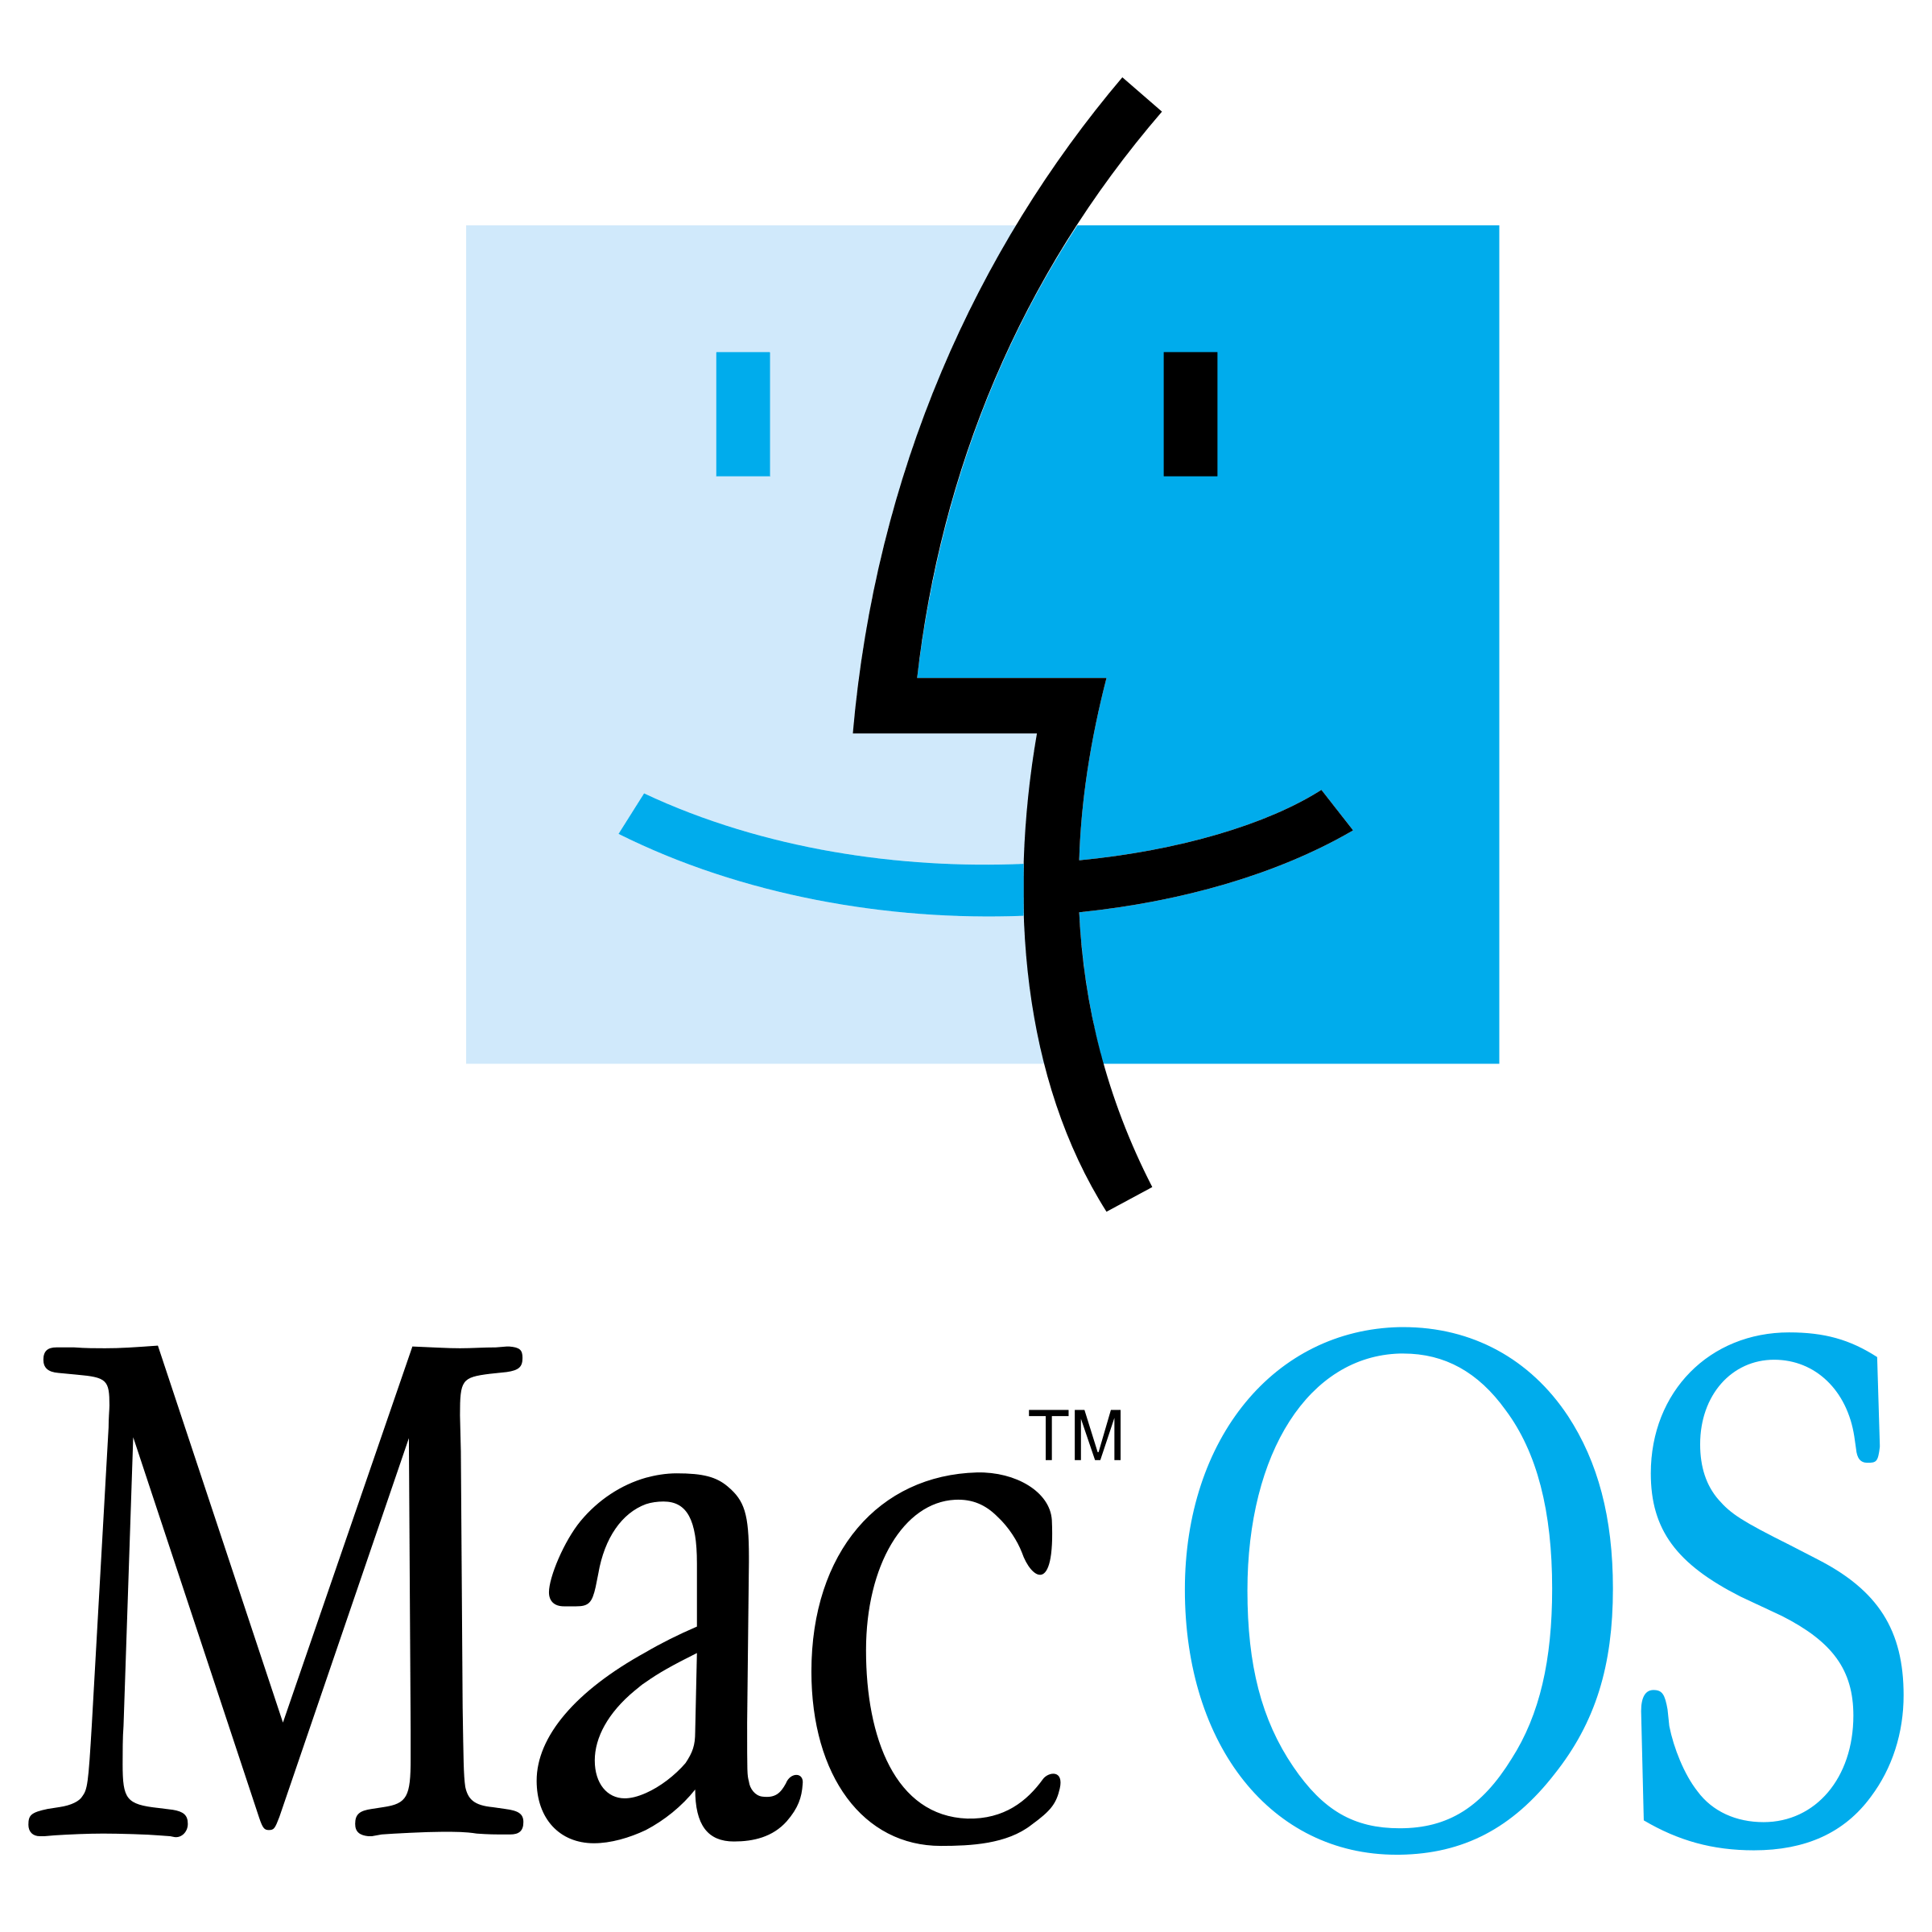 OS Logo - Mac OS Logo PNG Transparent & SVG Vector - Freebie Supply